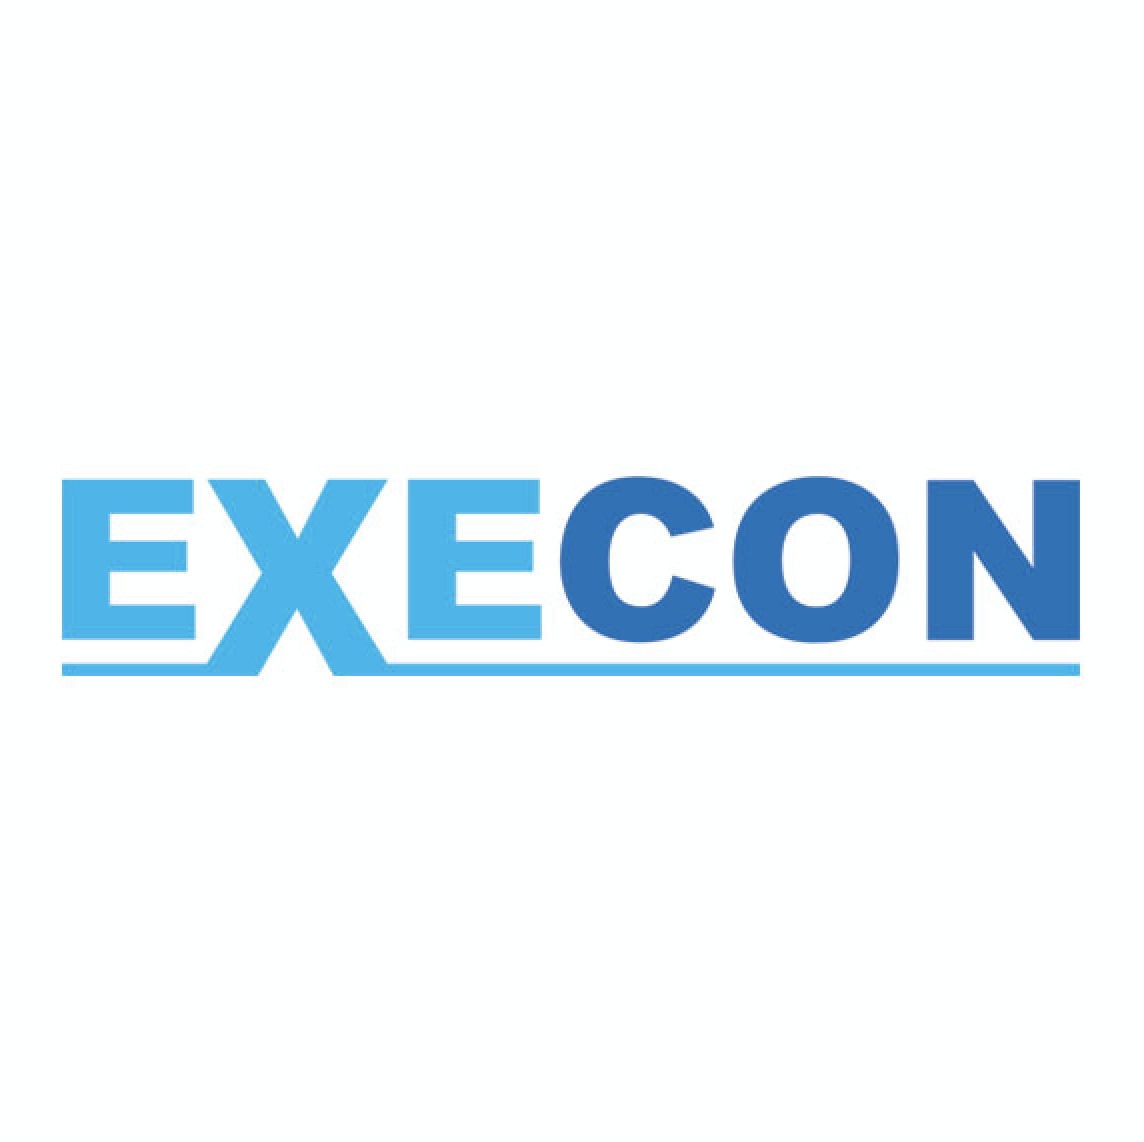 Execon logo